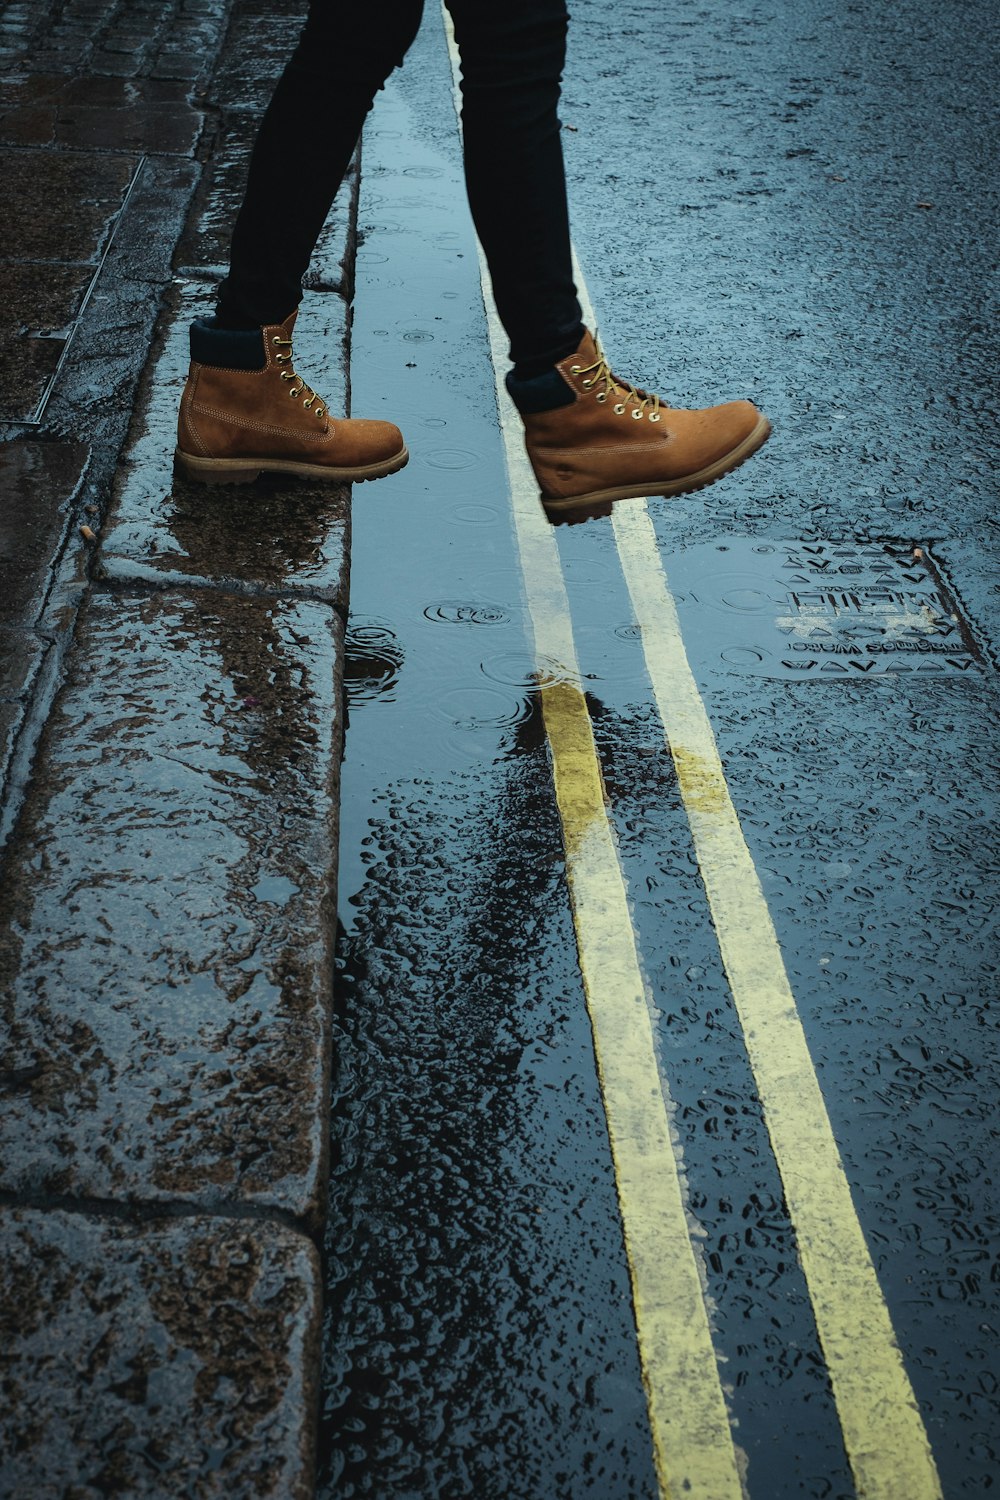 Persona con botas marrones caminando por un camino mojado